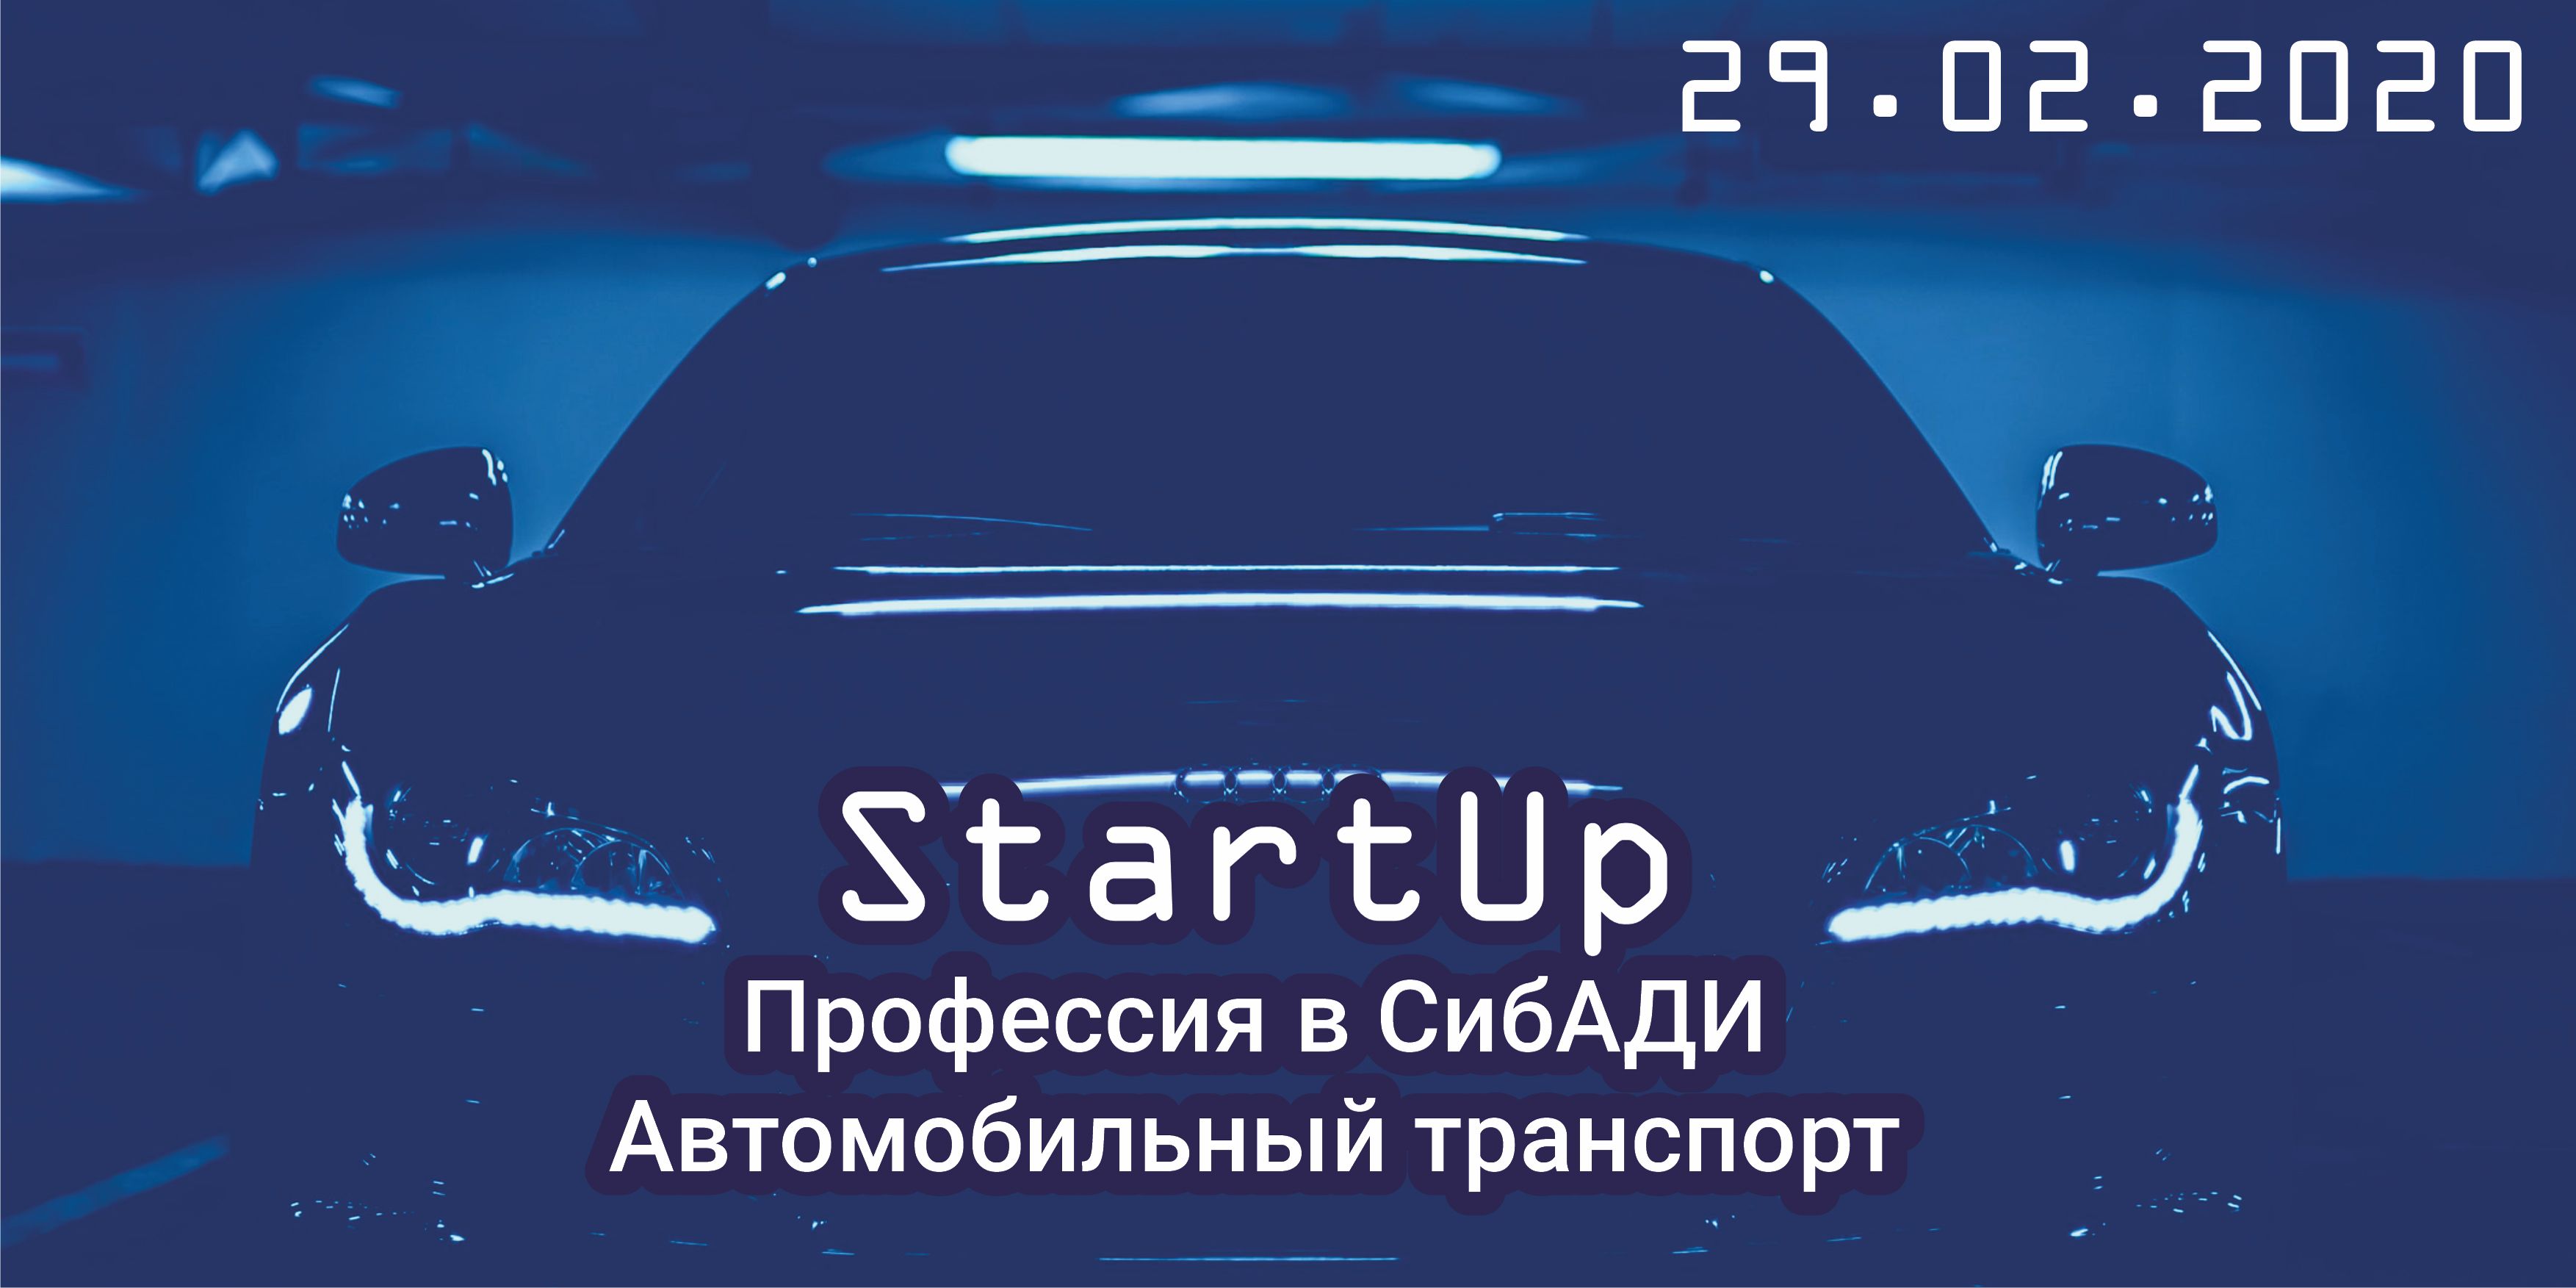 StartUp Шаг в профессию будущего (АТ)